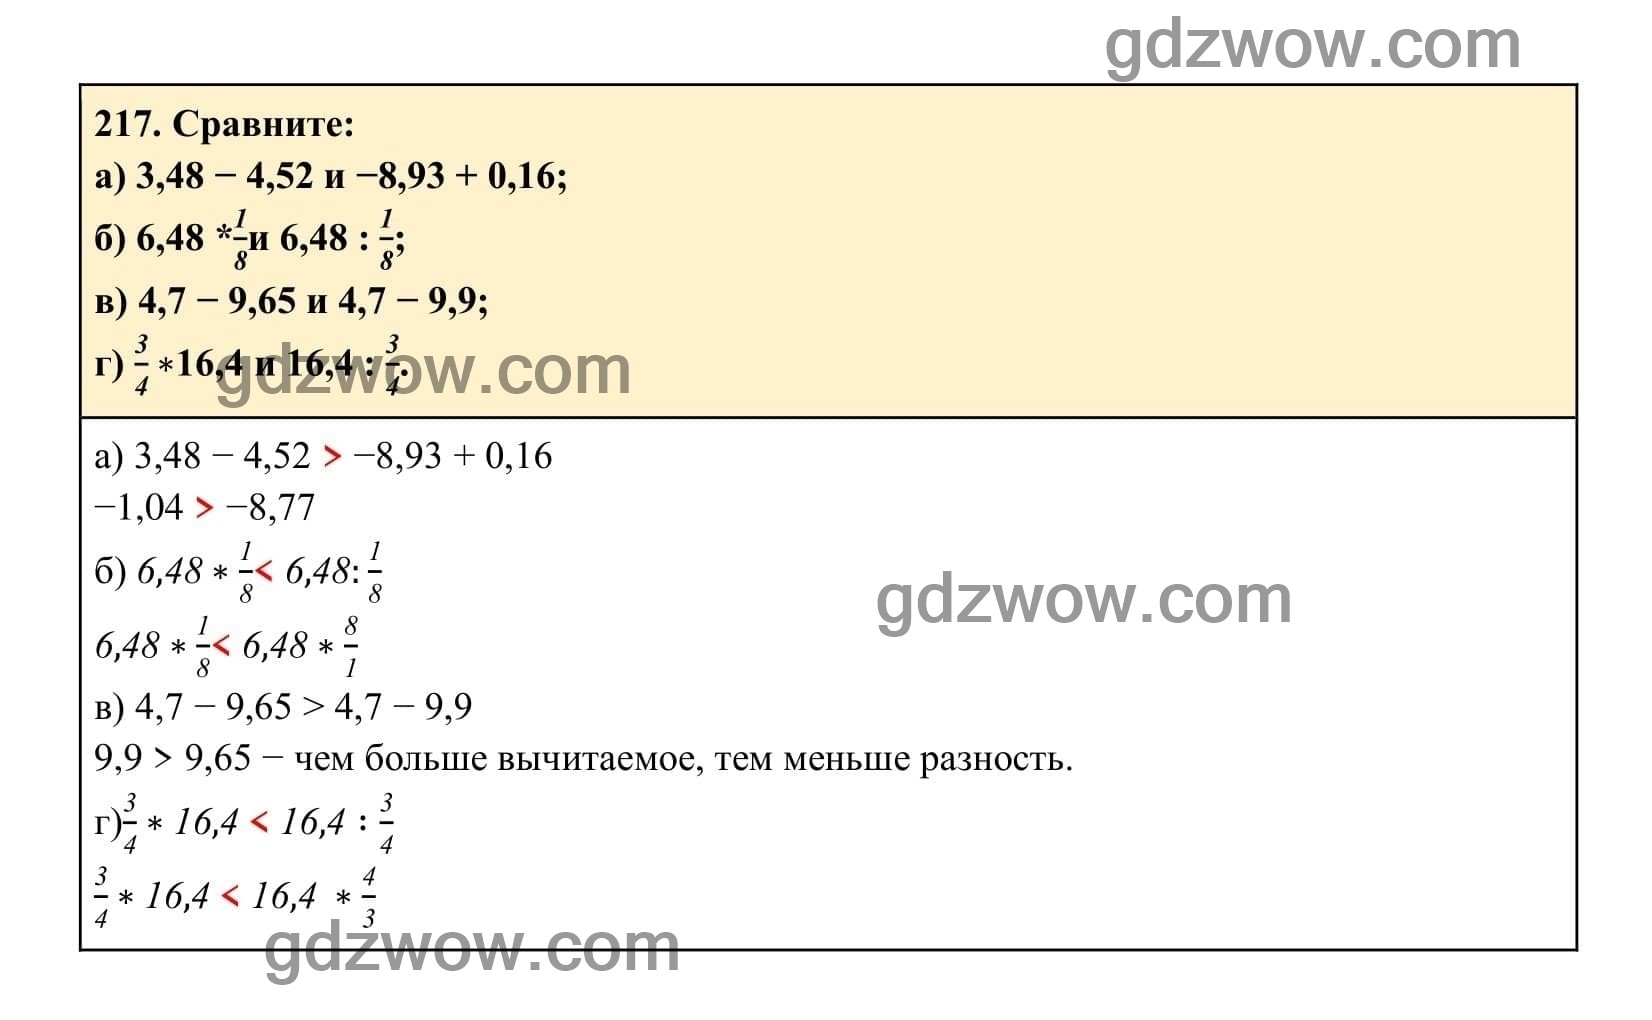 Упражнение 217 - ГДЗ по Алгебре 7 класс Учебник Макарычев (решебник) - GDZwow